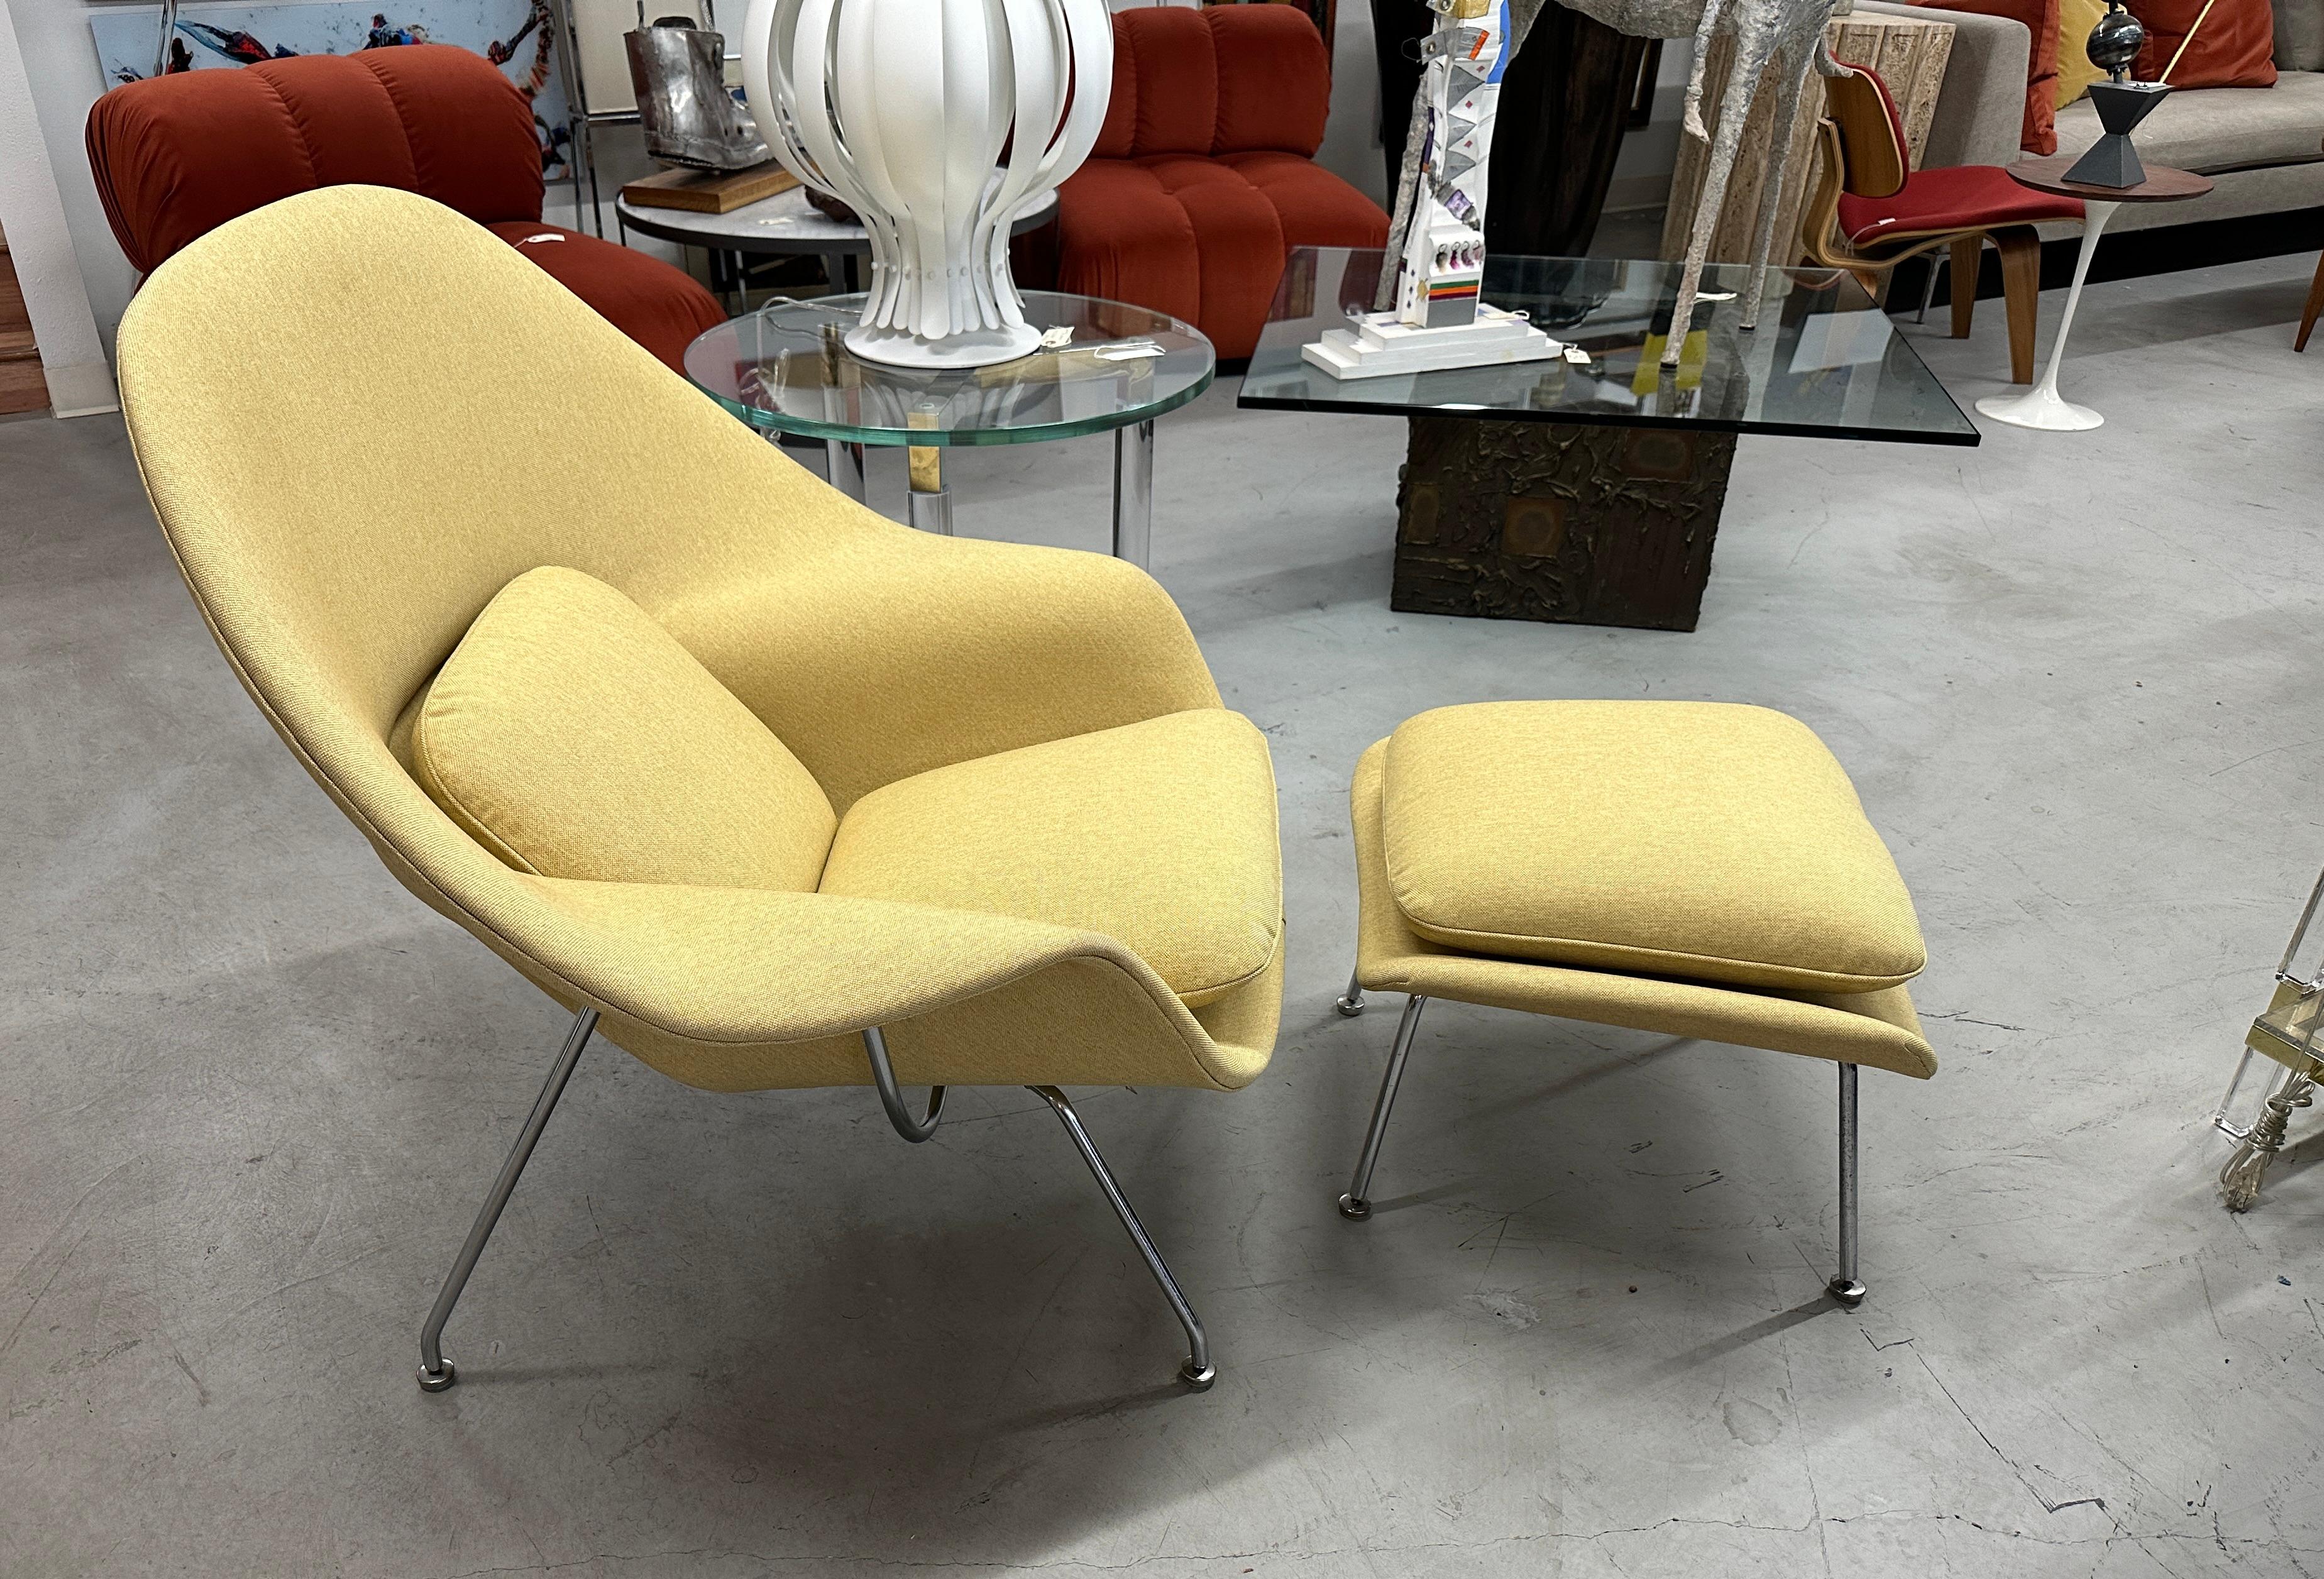 Un bel exemple de l'iconique chaise Womb et de l'ottoman conçus par Eero Saarinen pour Icone. Nous l'avons fait retapisser dans un tissu Knoll authentique, Crossroads, dans une couleur Honey Bee. Le tissu contient 43 % de polyester, 37 % de